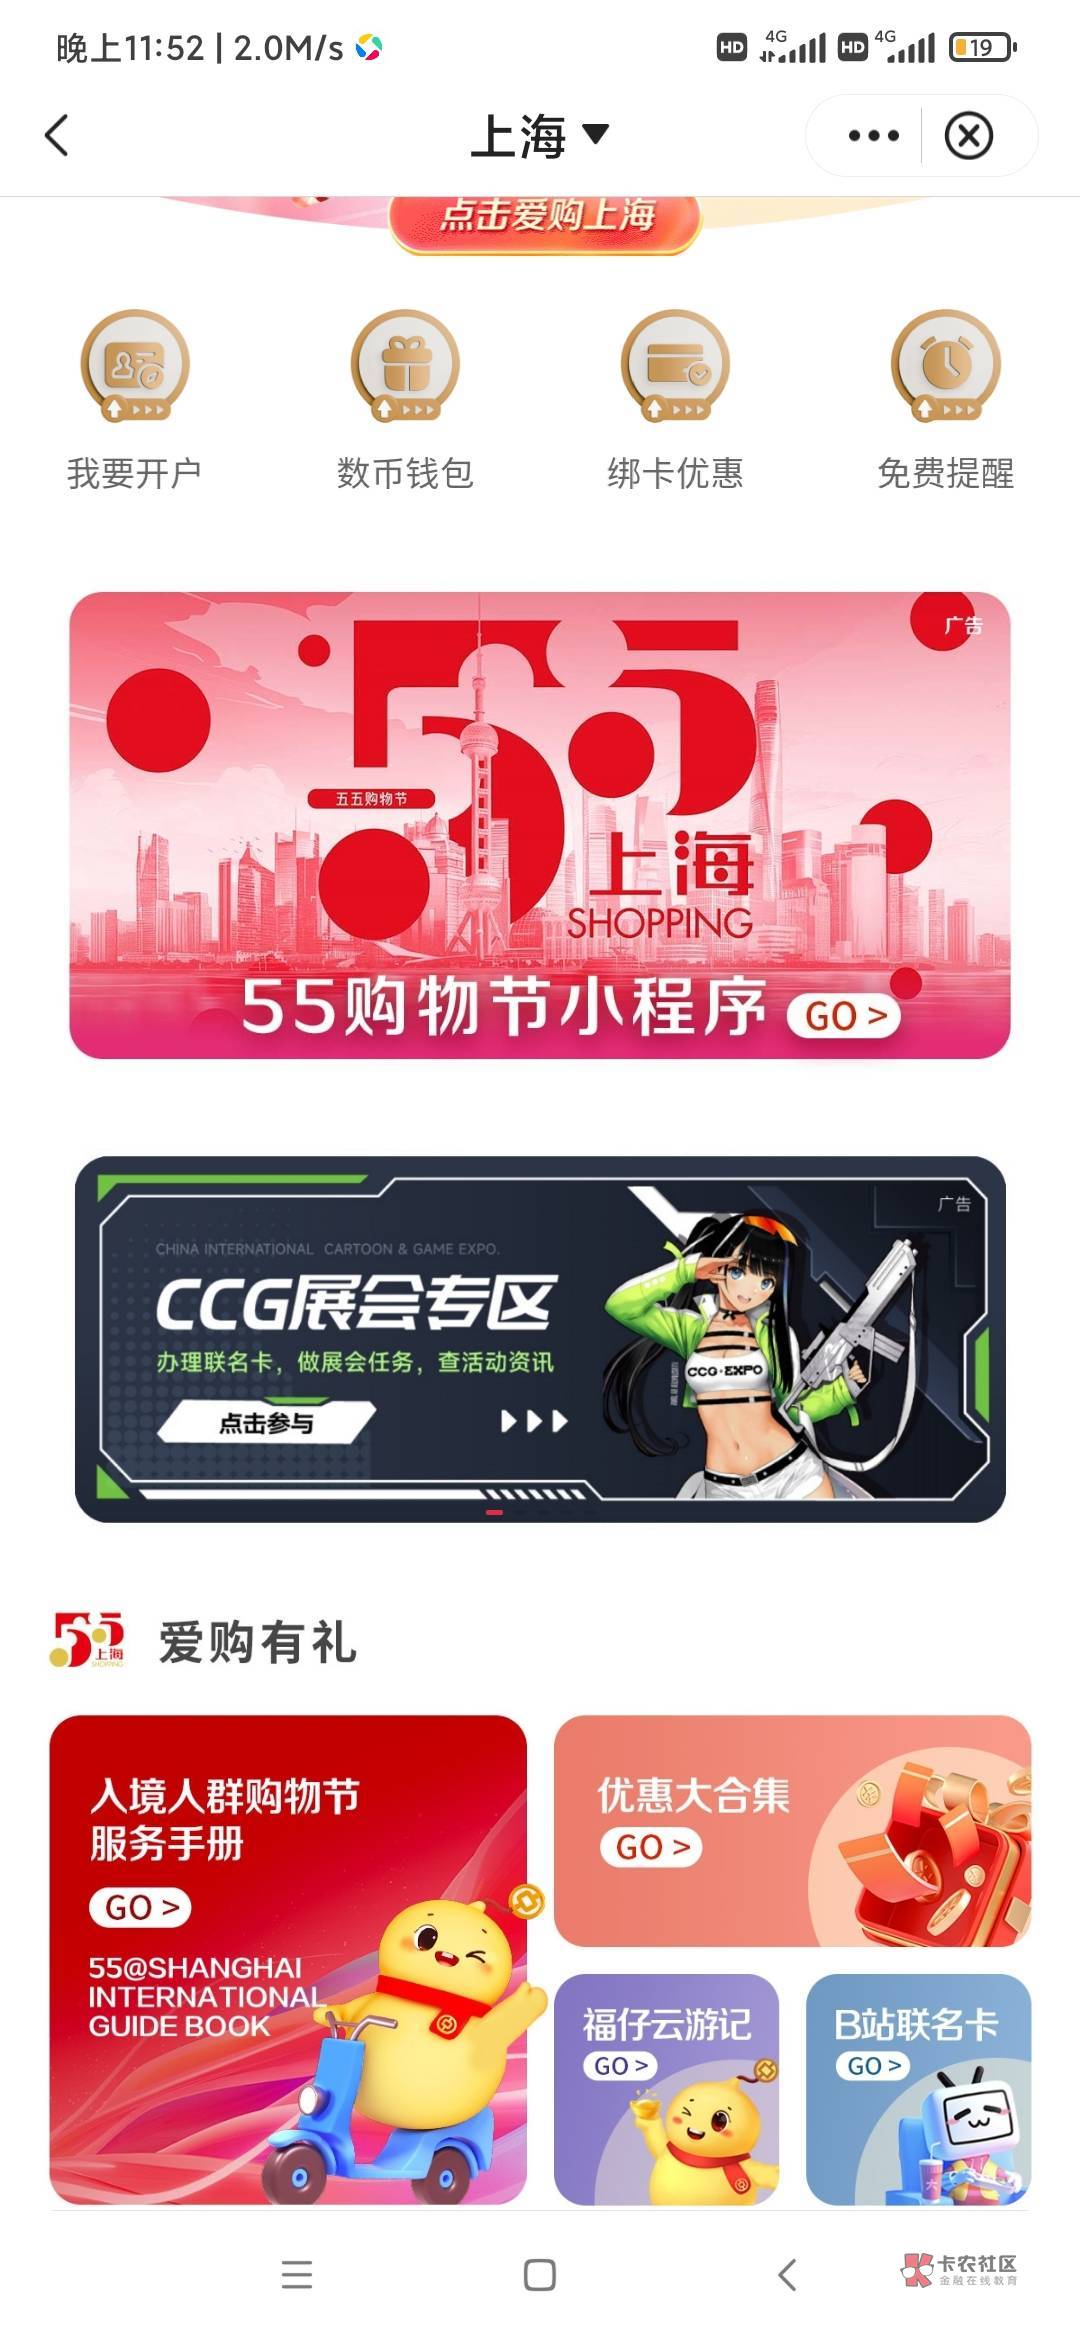 老哥们上海中行这个CCG签到抽奖怎么没有入口了

76 / 作者:逞强- / 